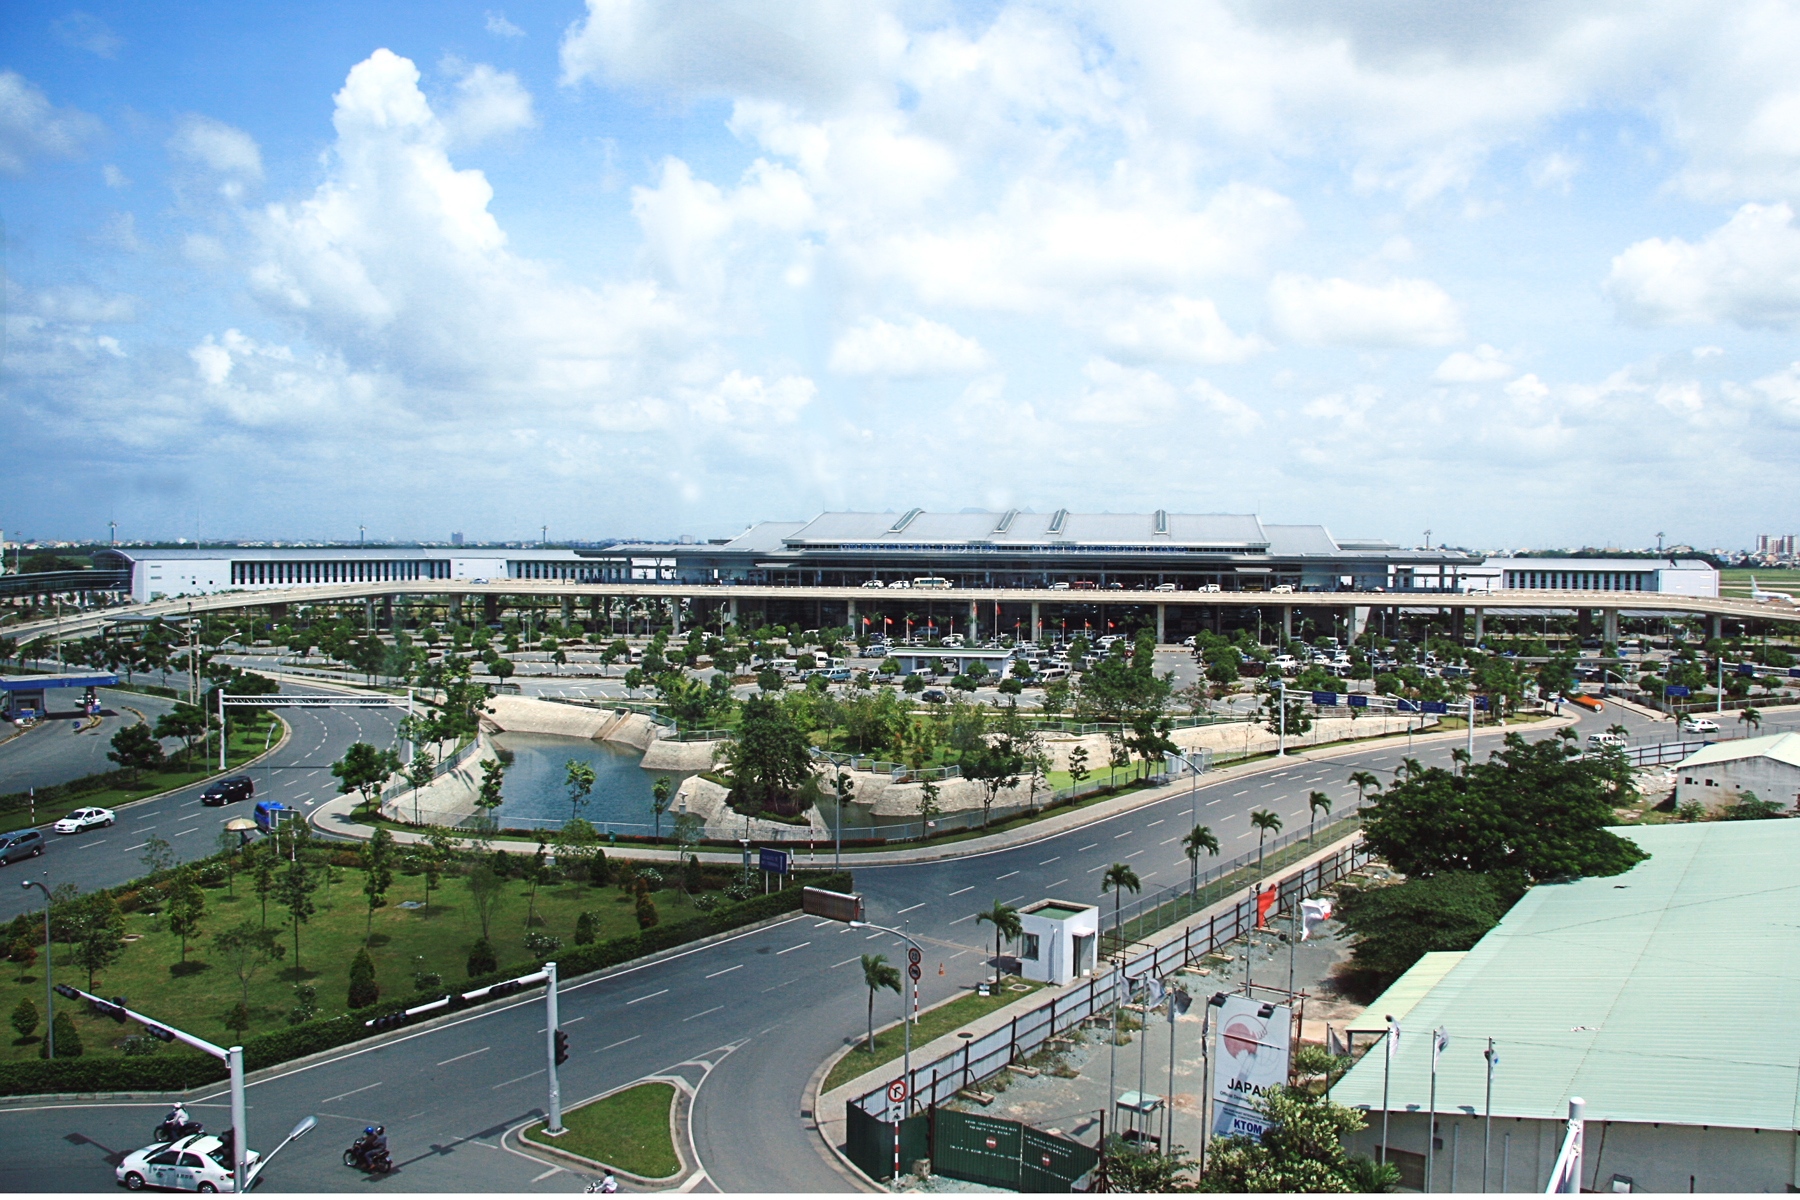 Nhu cầu thuê taxi sân bay Tân Sơn Nhất